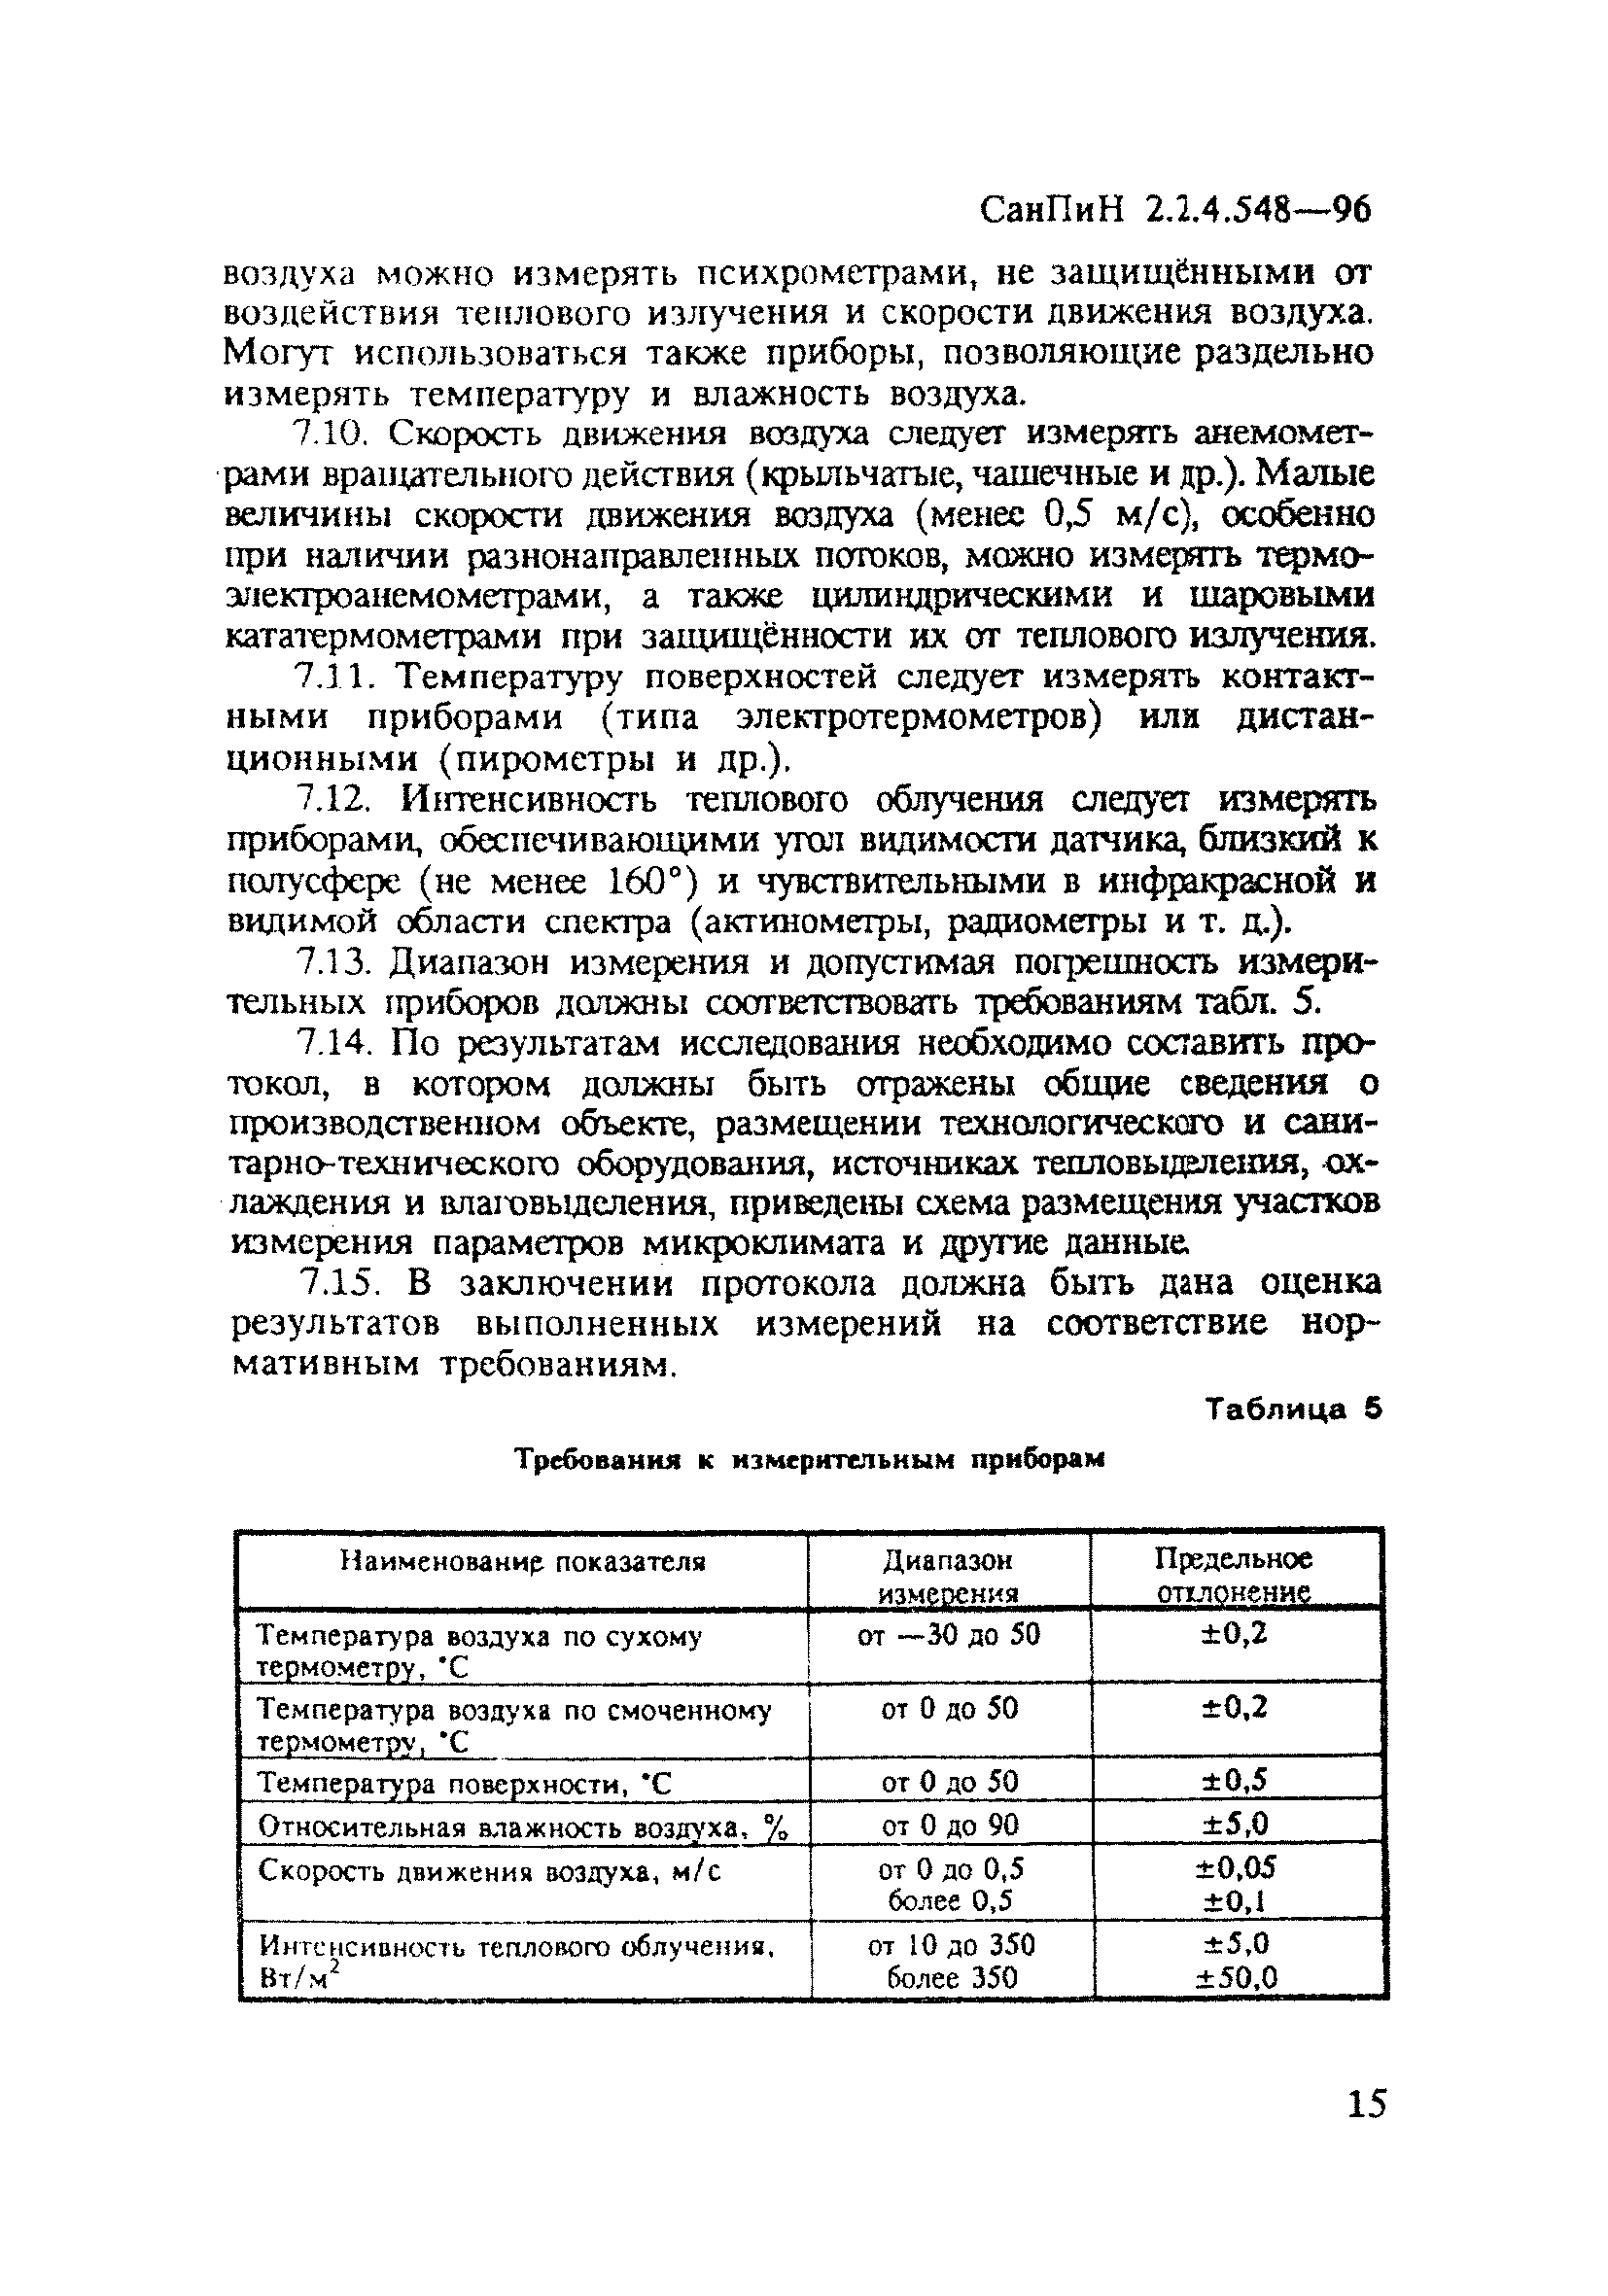 СанПиН 2.2.4.548-96